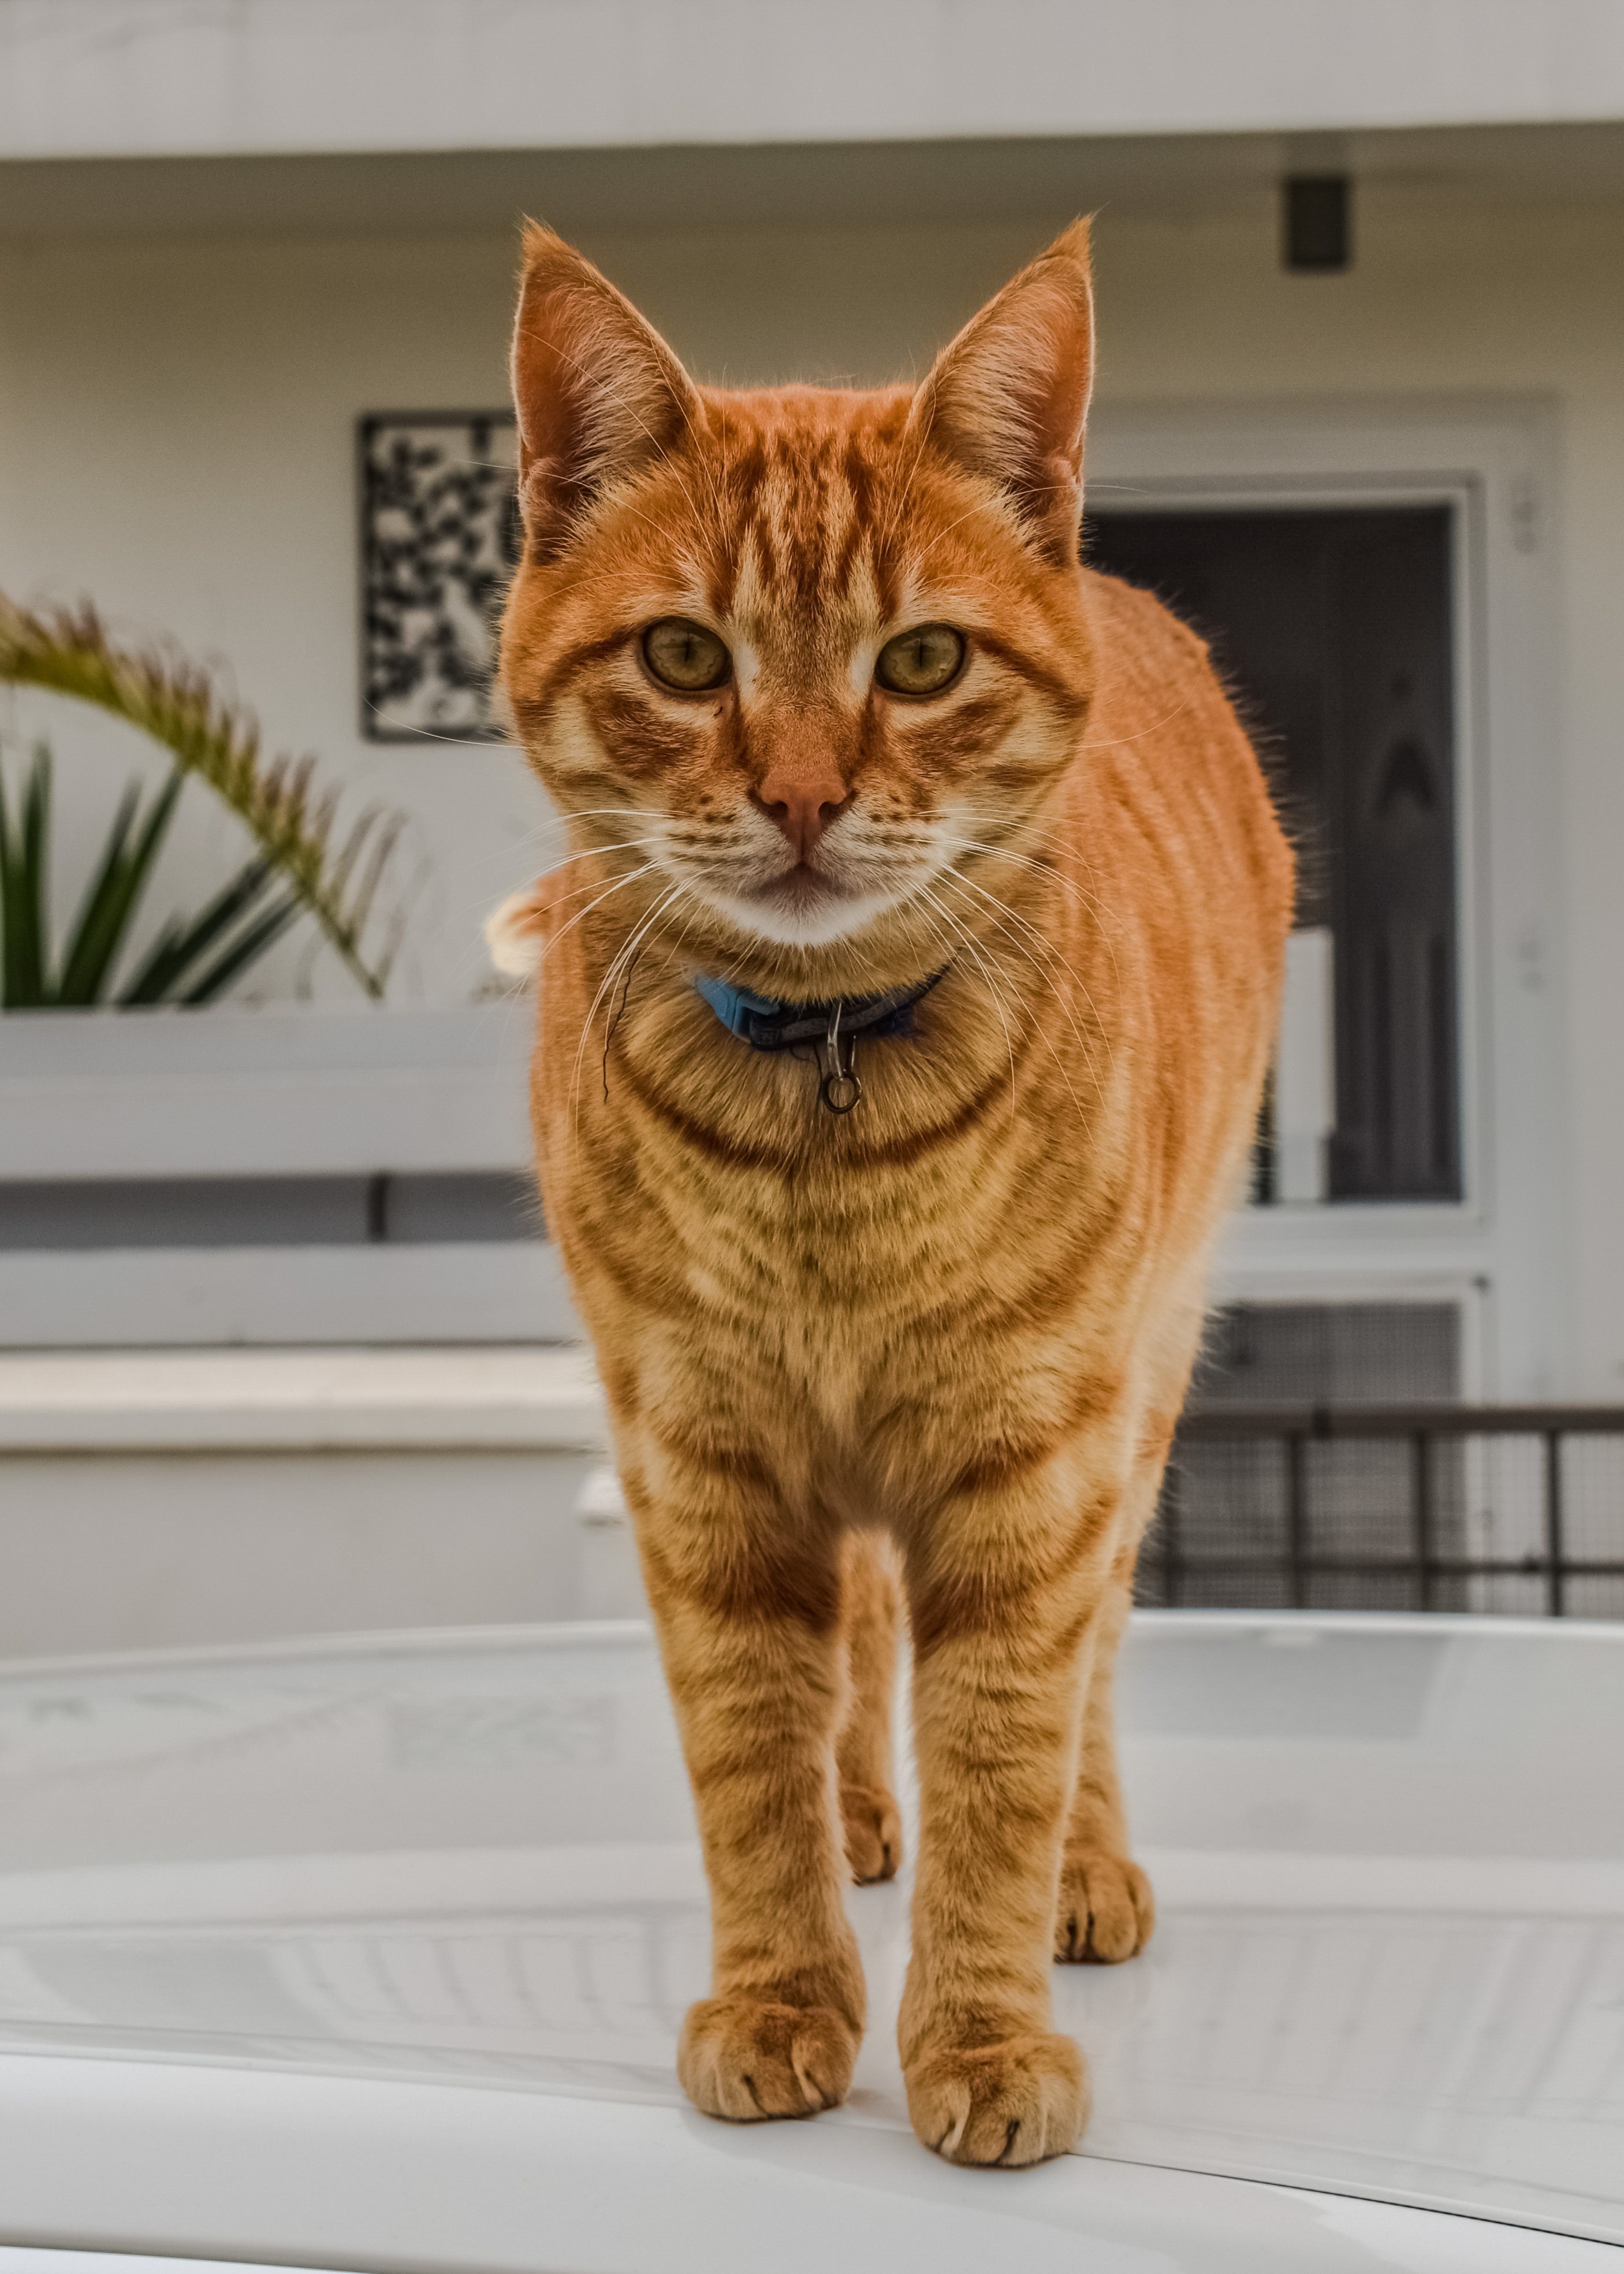 Порода кошек с рыжей шерстью. Европейская короткошерстная табби рыжий. Тигровый макрелевый табби рыжий. Европейский короткошерстный кот рыжий. Европейская короткошерстная кошка рыжая.